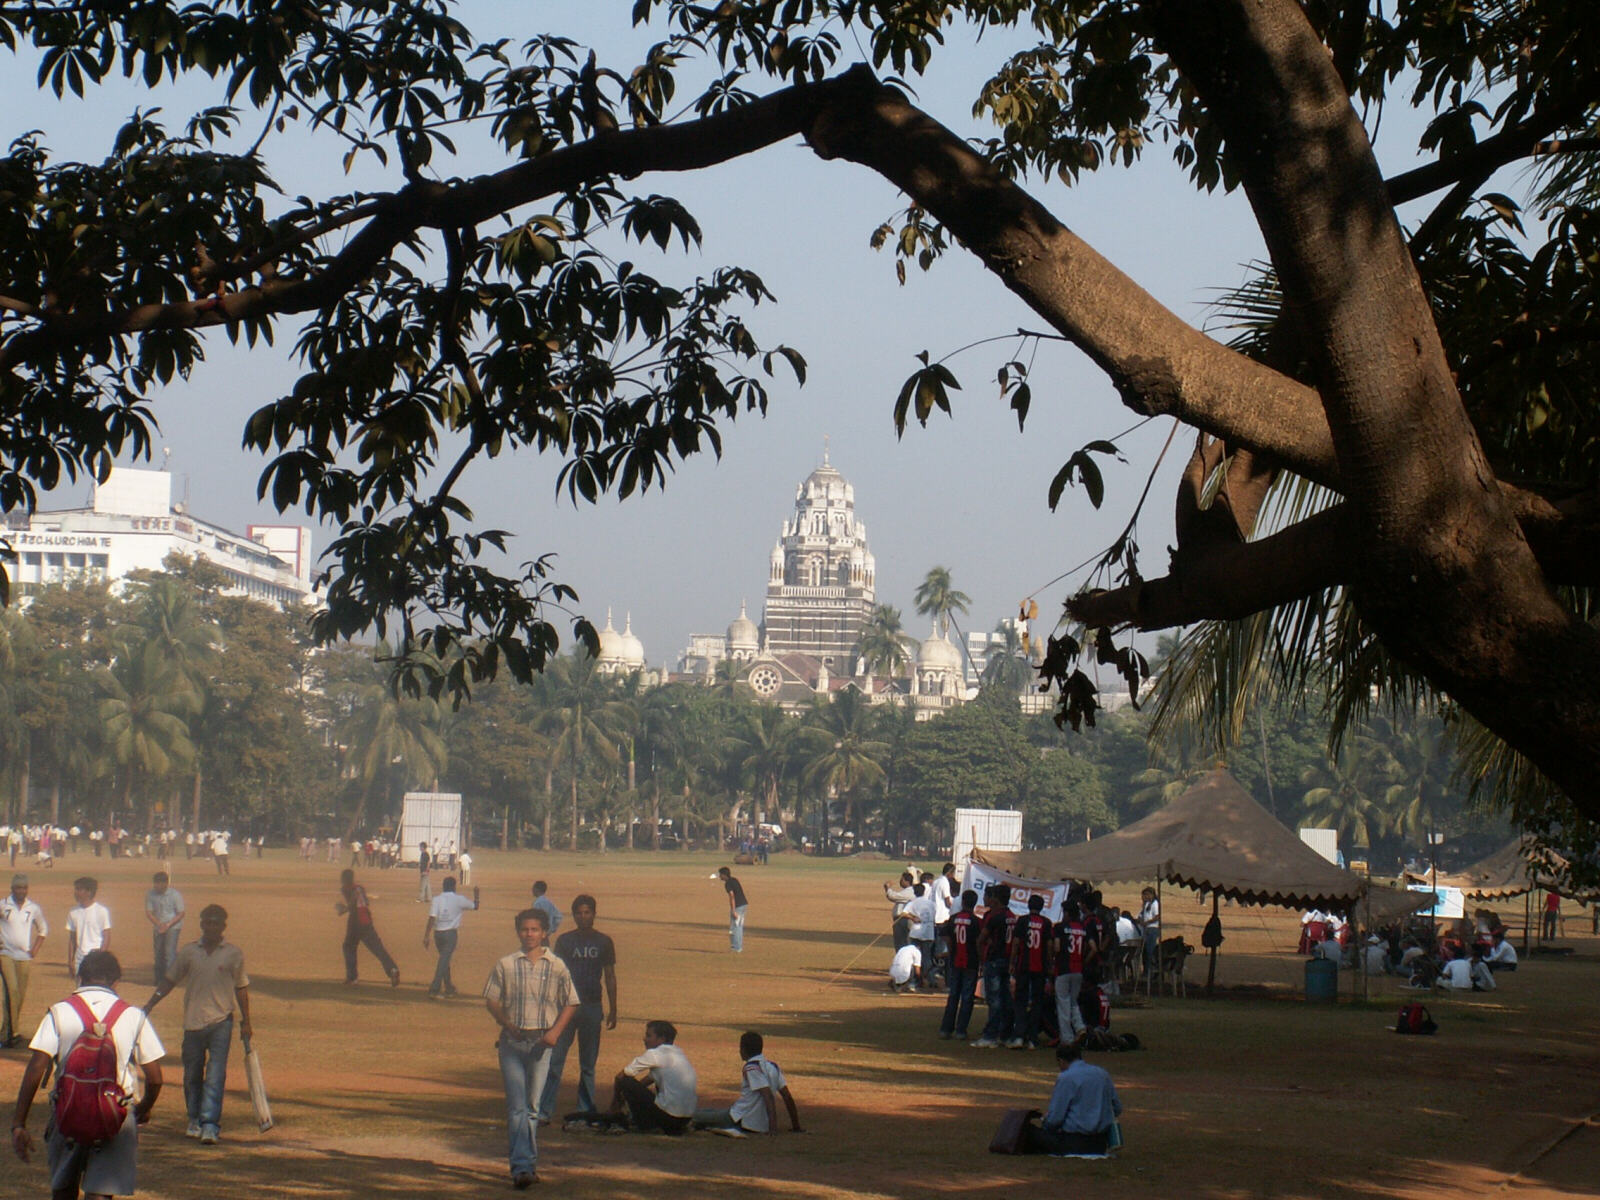 The Oval Maidan in Bombay / Mumbai